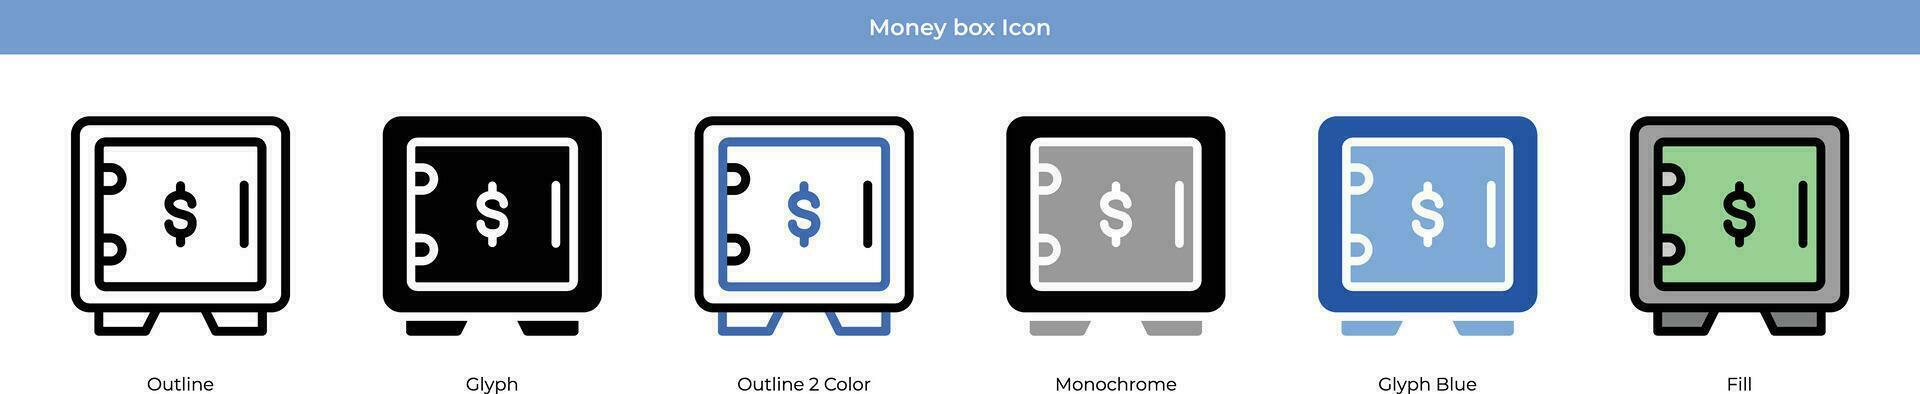 Money box Icon Set vector